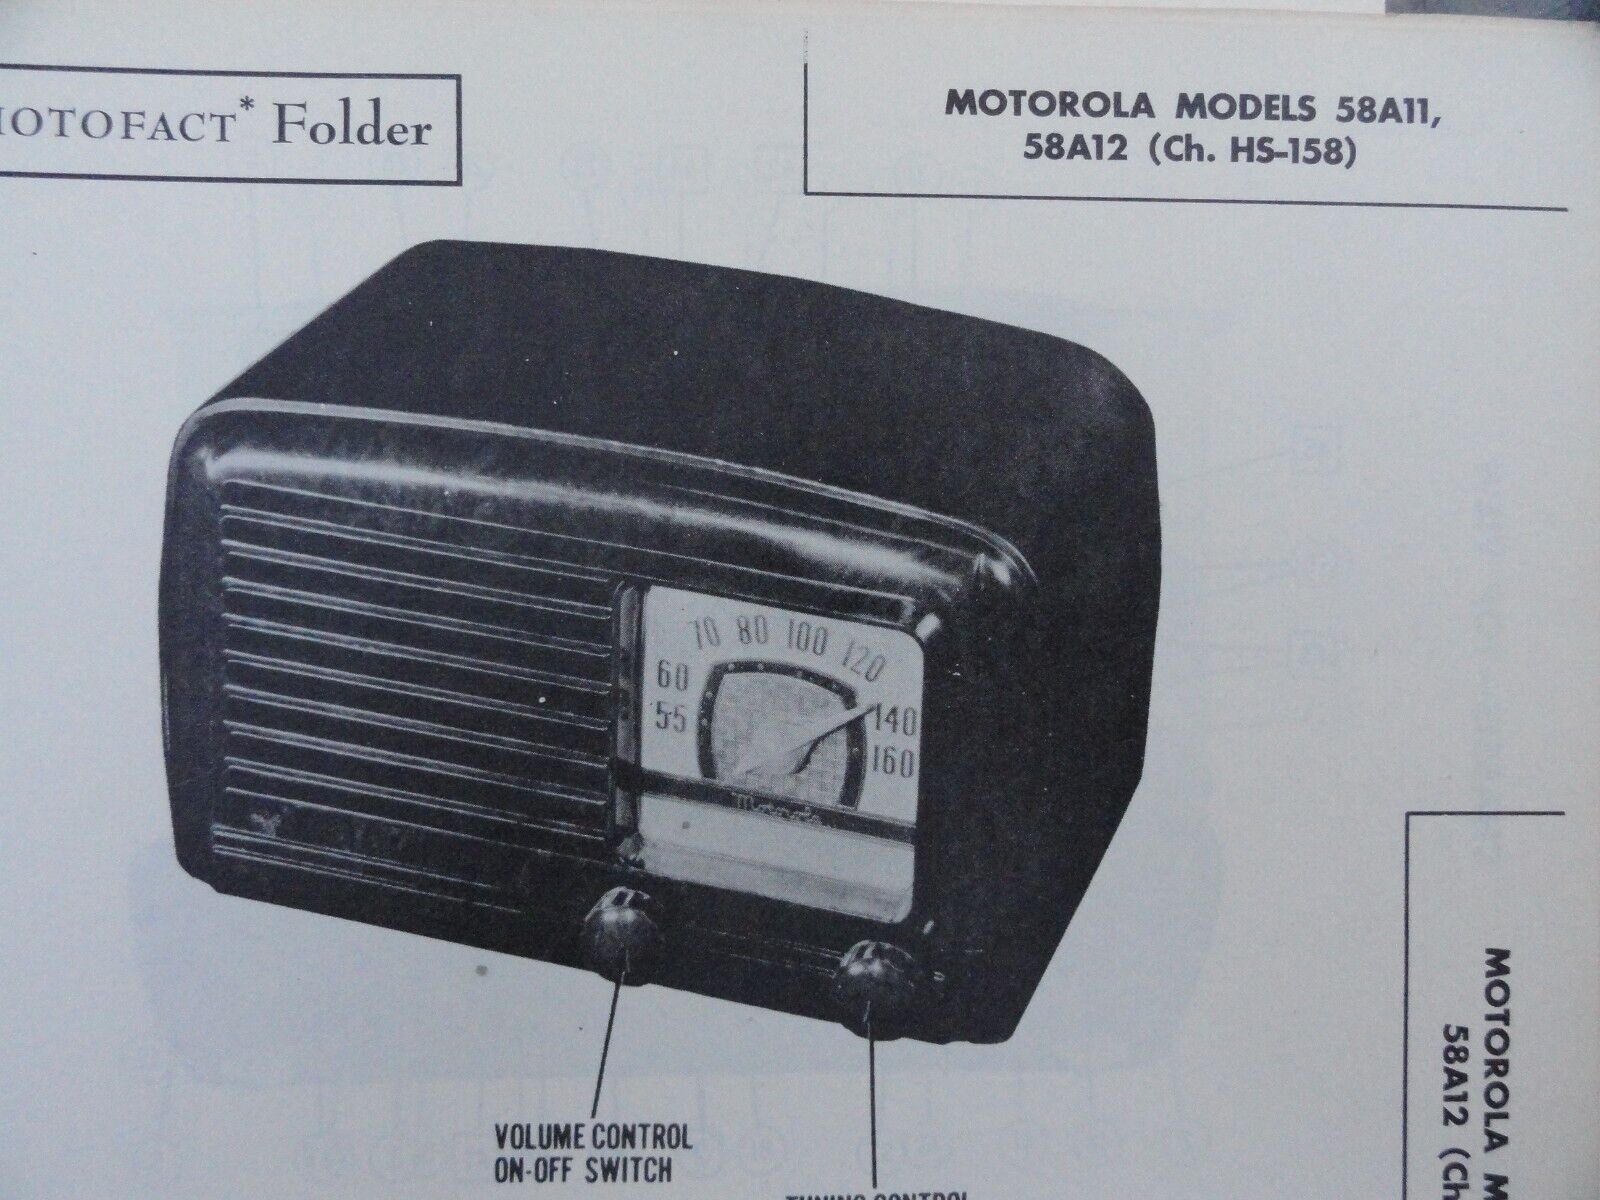 Vintage Sams Photofact Manual MOTOROLA MODELS 58A11, 58A12